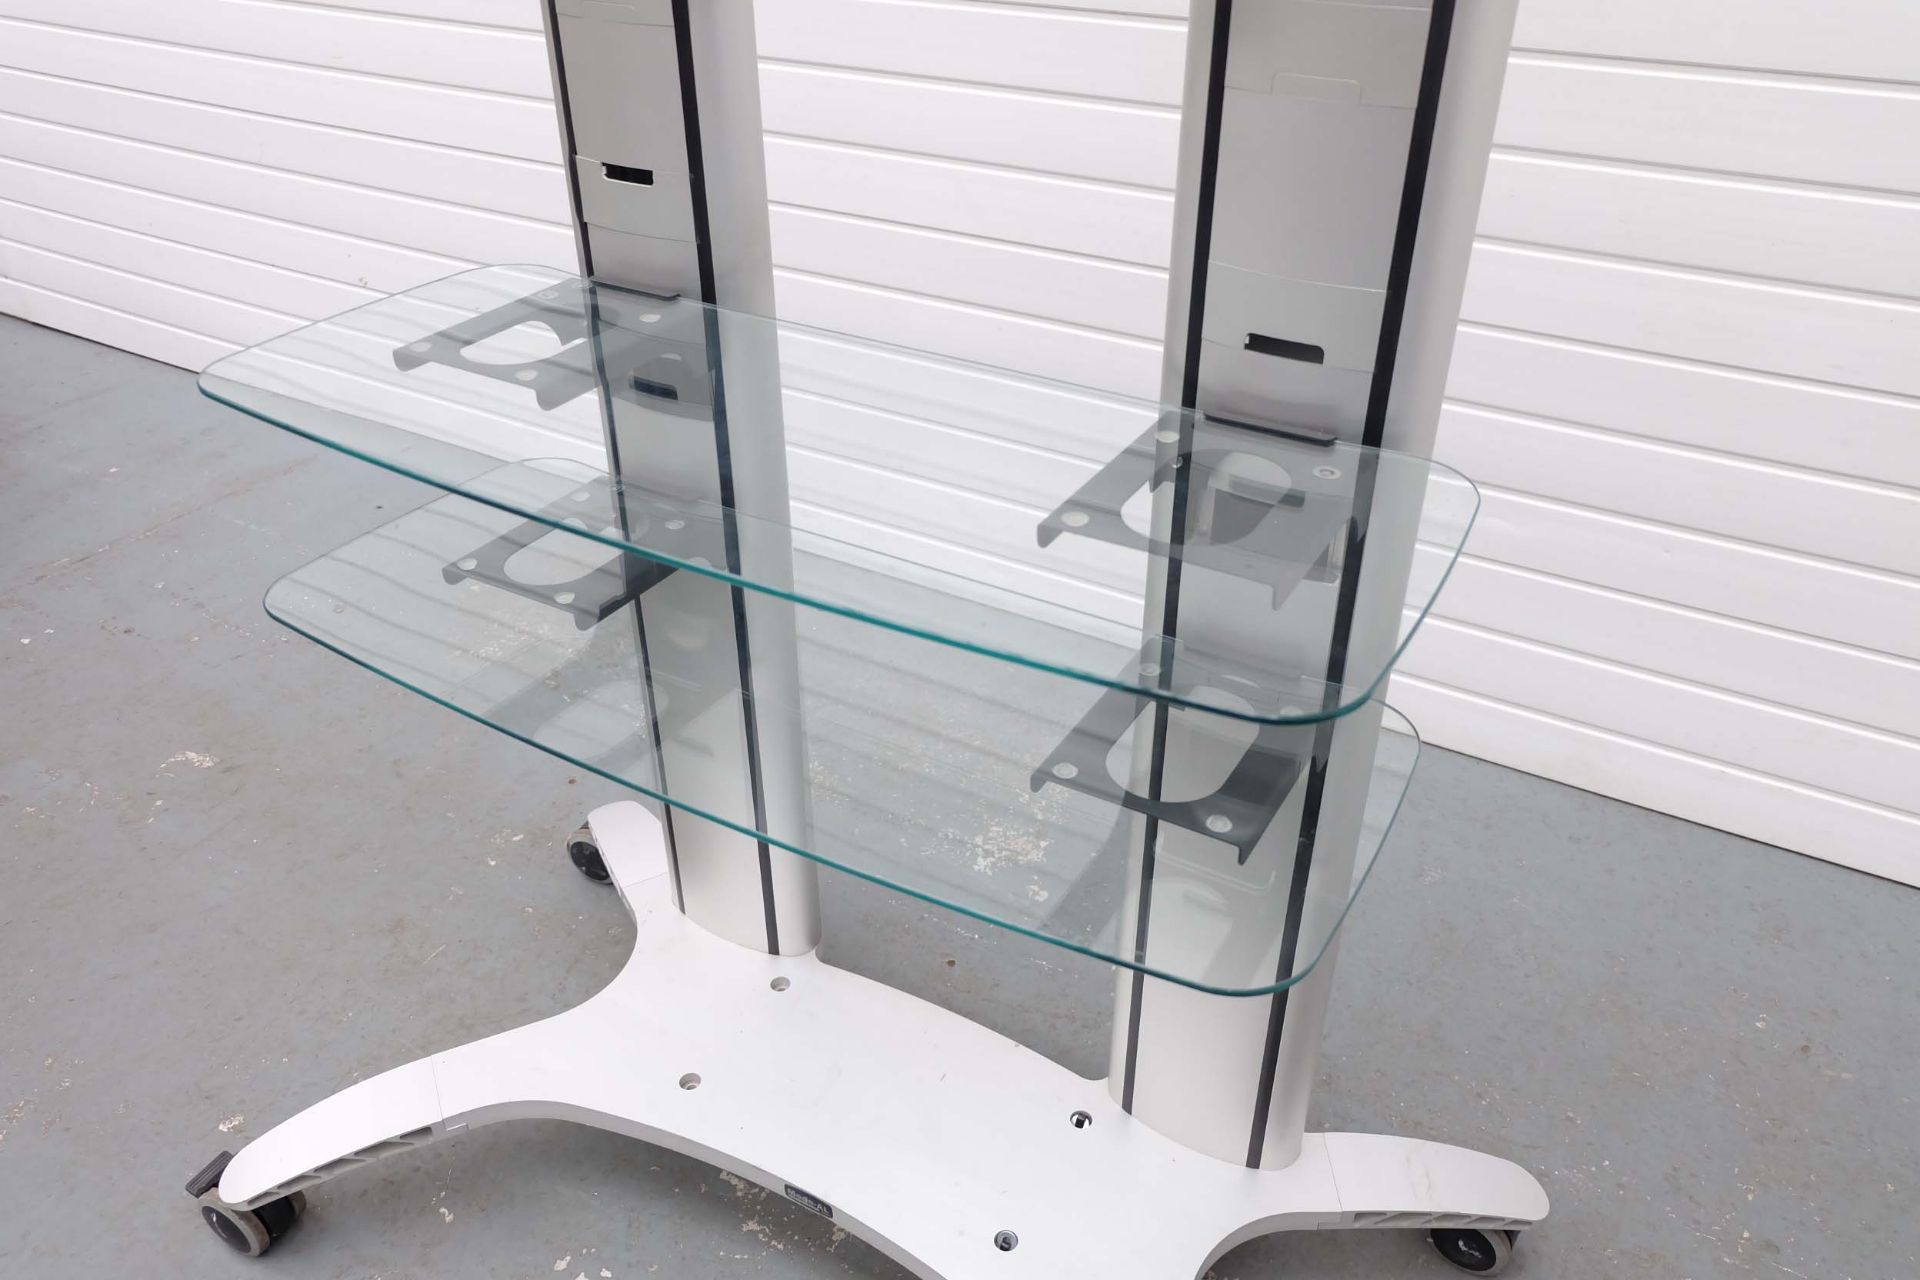 MODE-AL Exhibition T.V Media Stand on Wheels. 2 Glass Shelves. Adjustable T.V Bracket. Size 1100mm x - Image 5 of 6